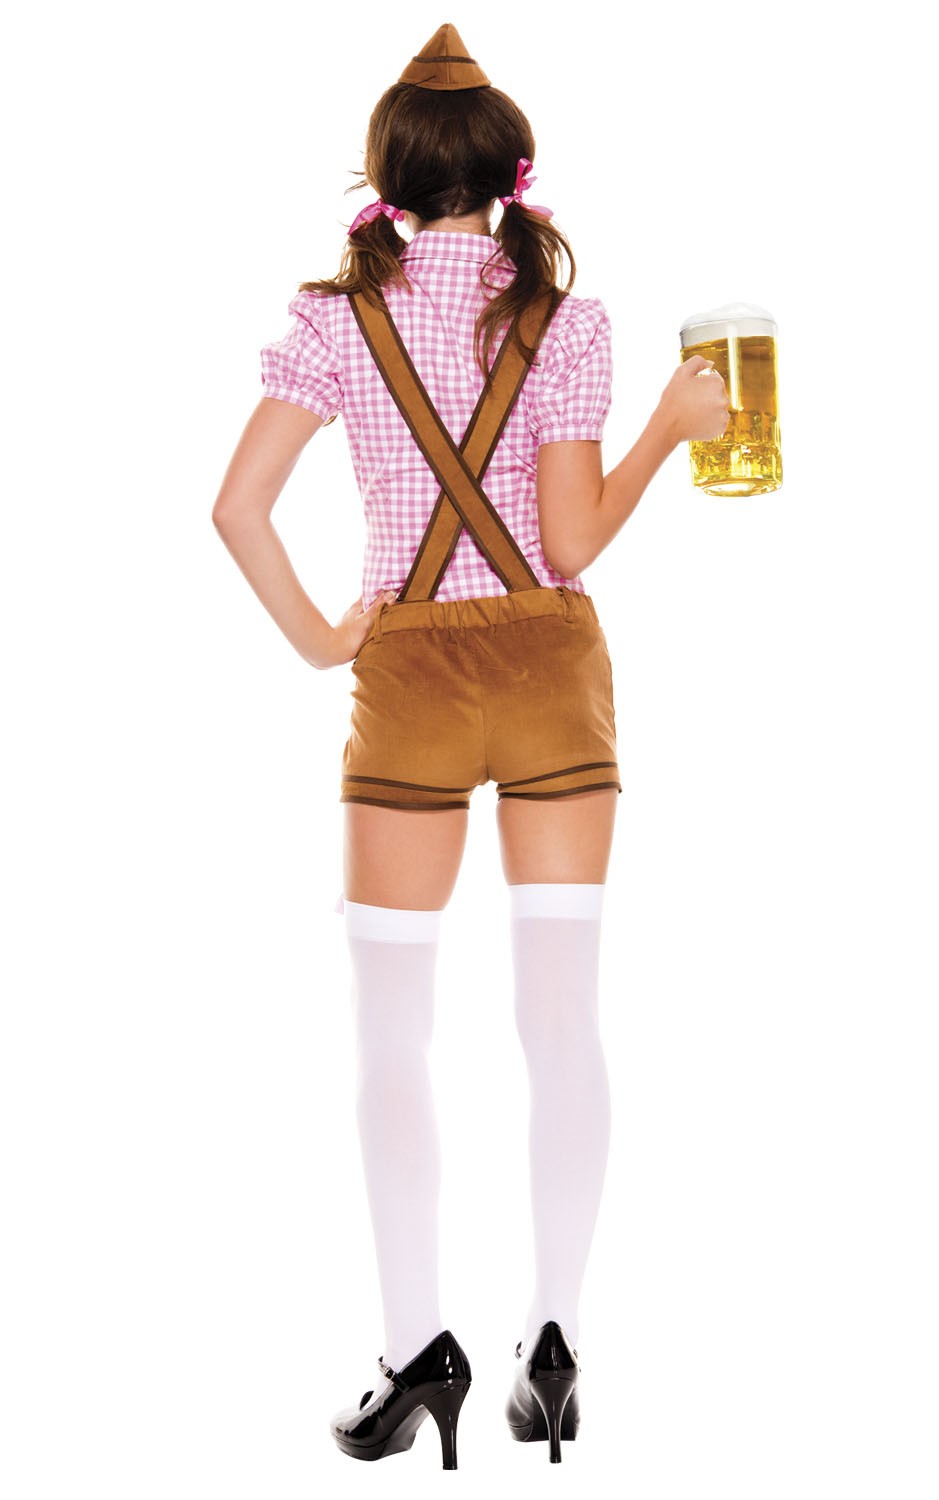 Lederhosen Beer Babe Costume